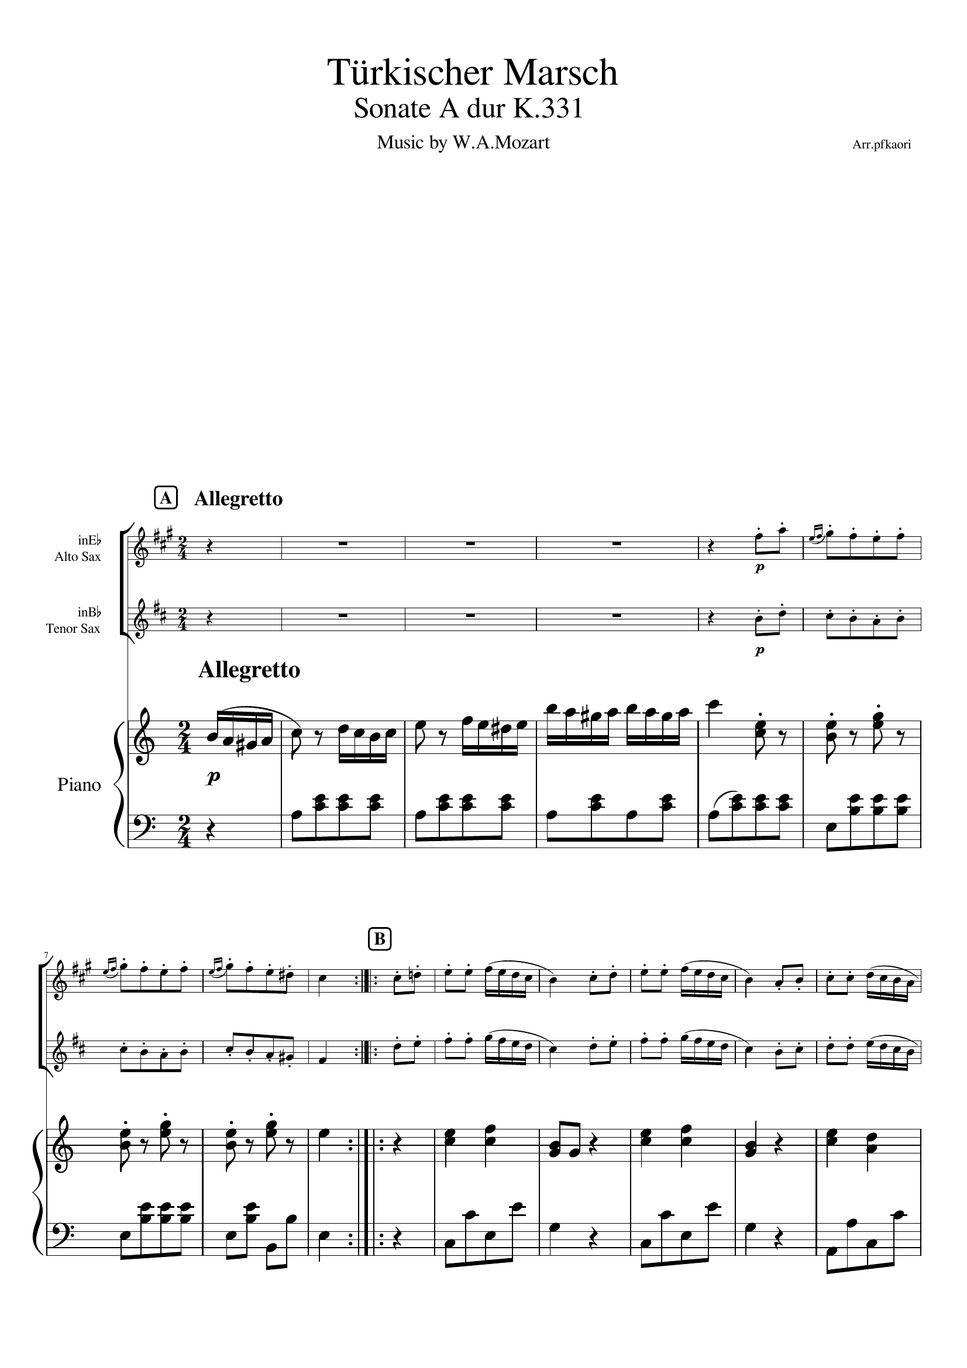 モーツアルト - トルコ行進曲 (ピアノトリオ/アルトサックス＆テナーサックス) by pfkaori